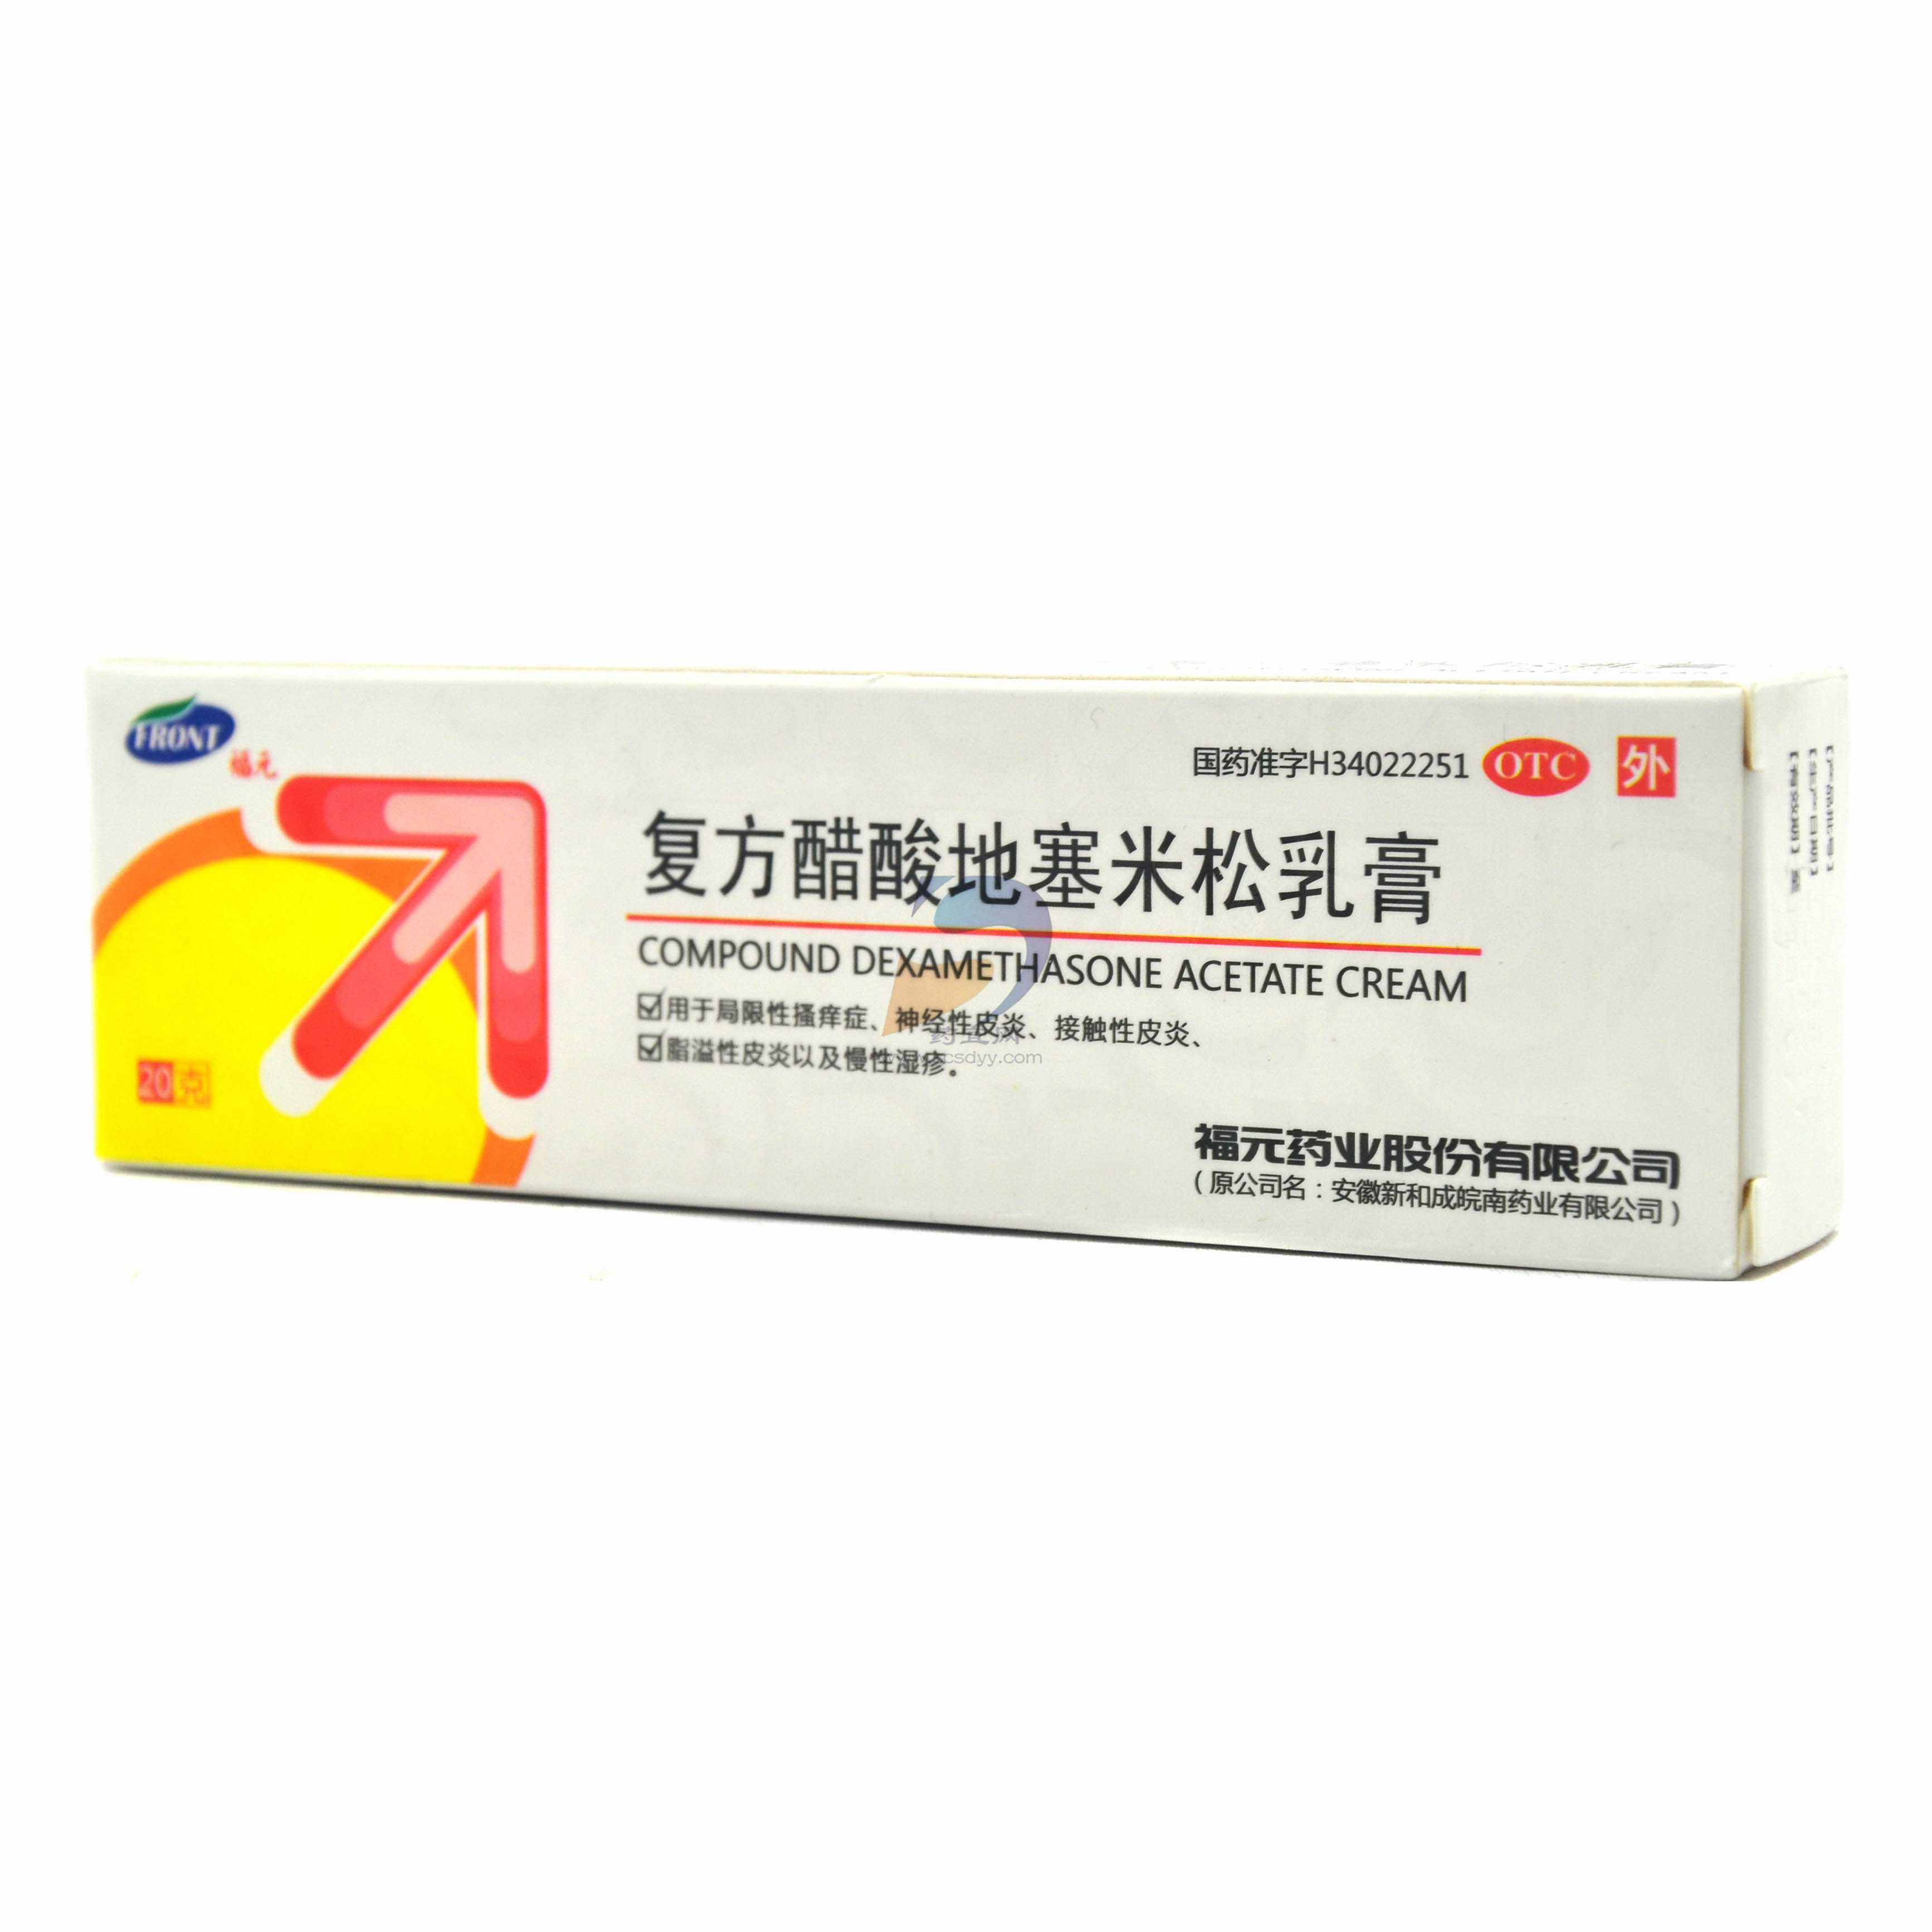 曲咪新乳膏 - 软膏剂 - 广东恒健制药有限公司